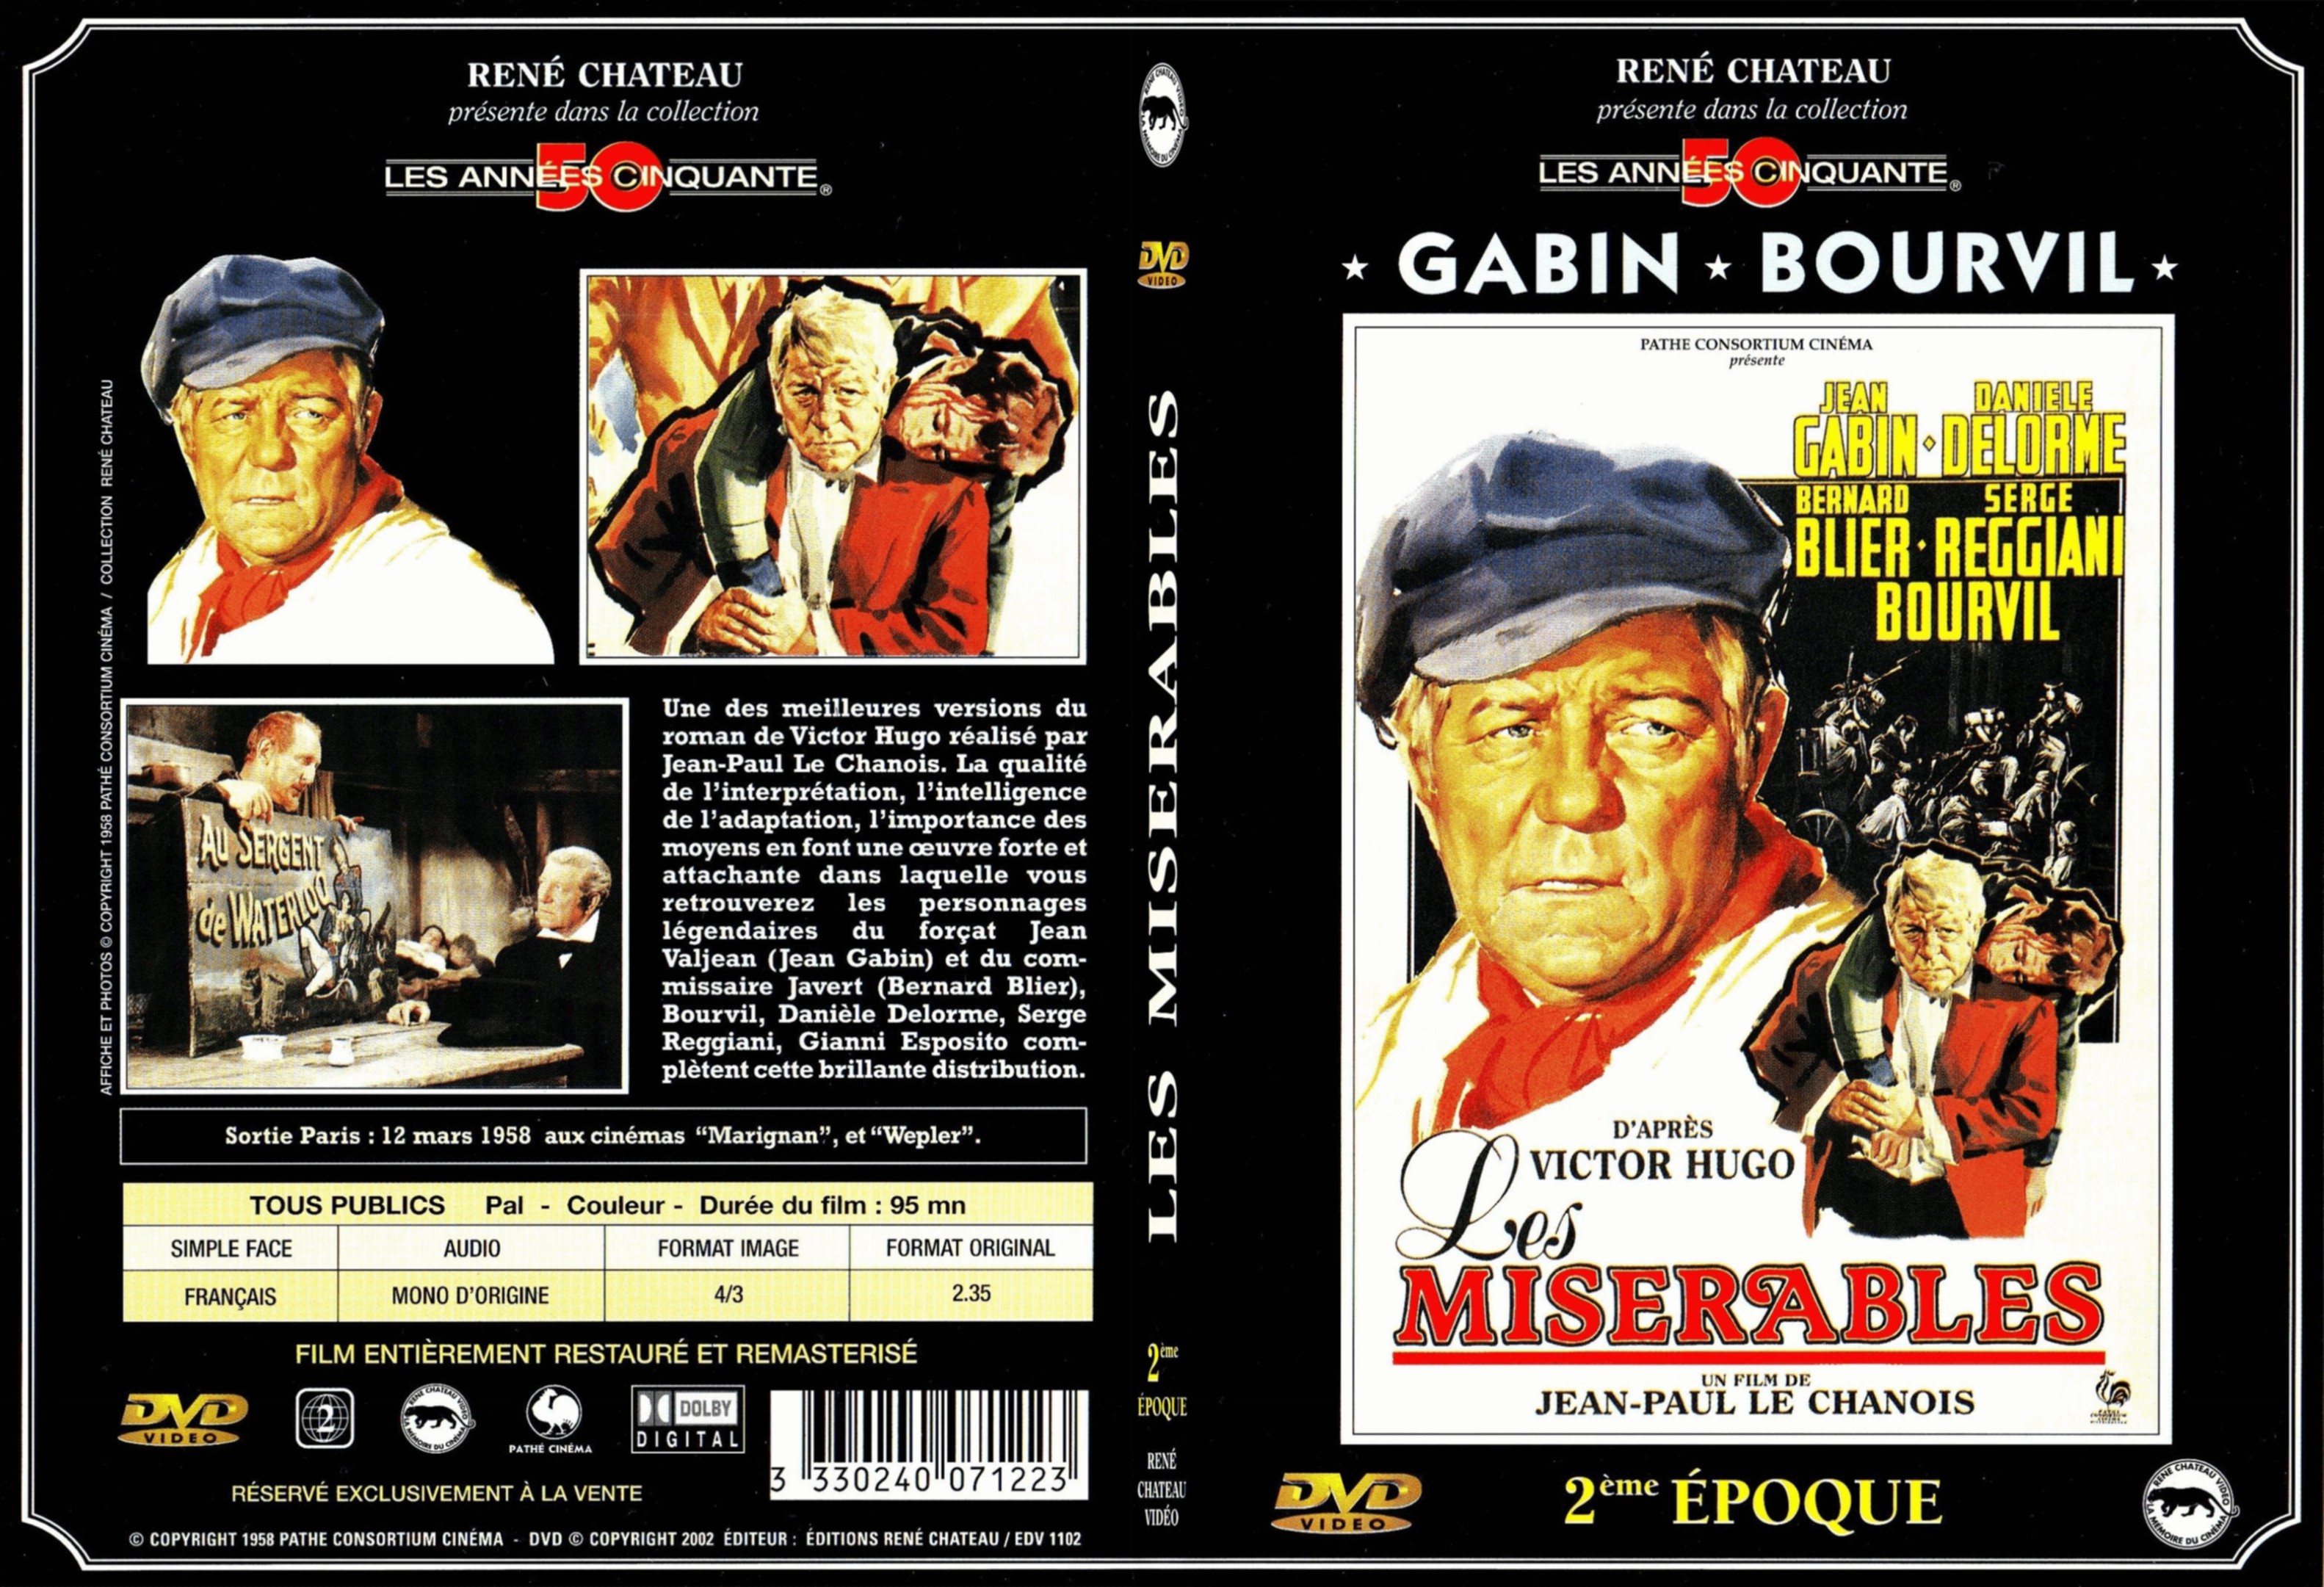 Jaquette DVD Les misrables (Gabin) 2 me poque - SLIM